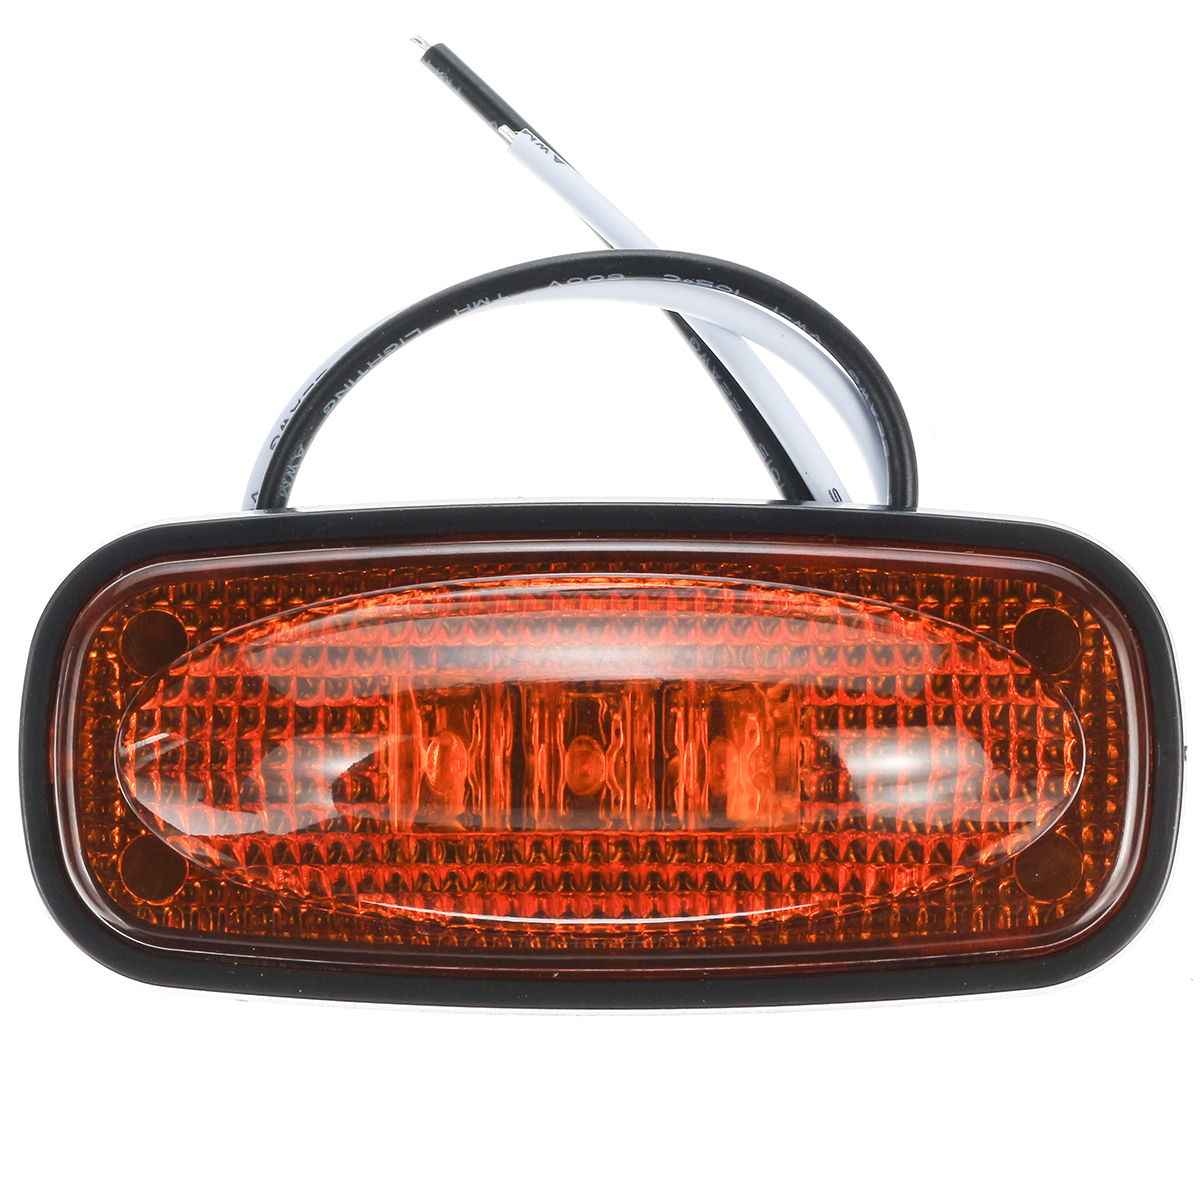 LED Side Fender Marker Light Warning Lamp for Dodge Ram 1500 2500 3500 4500 5500